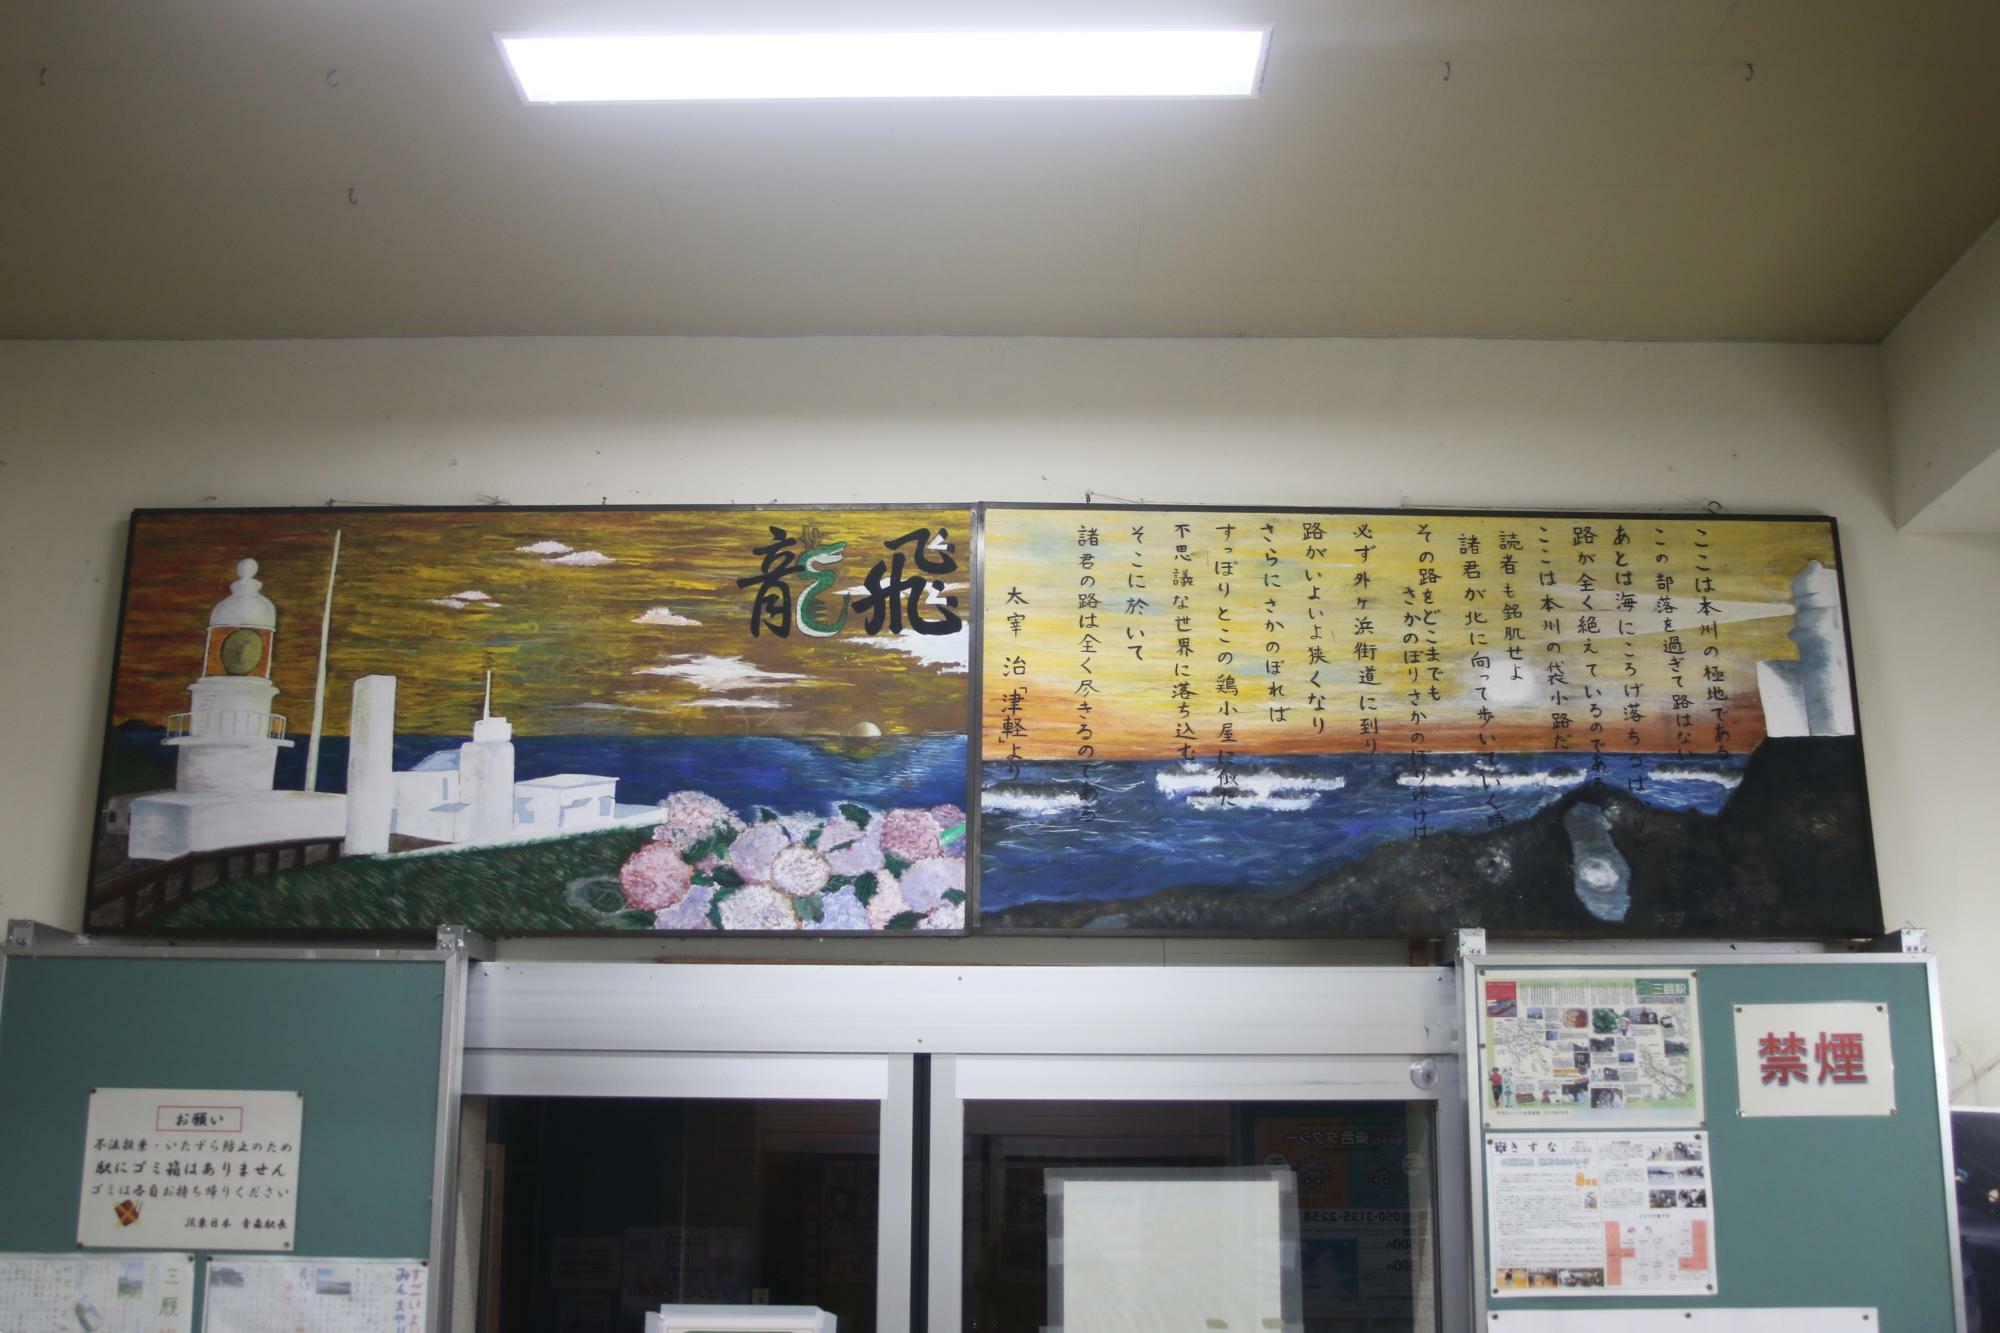 駅舎出入口上には太宰治作品にある龍飛岬の表現と絵